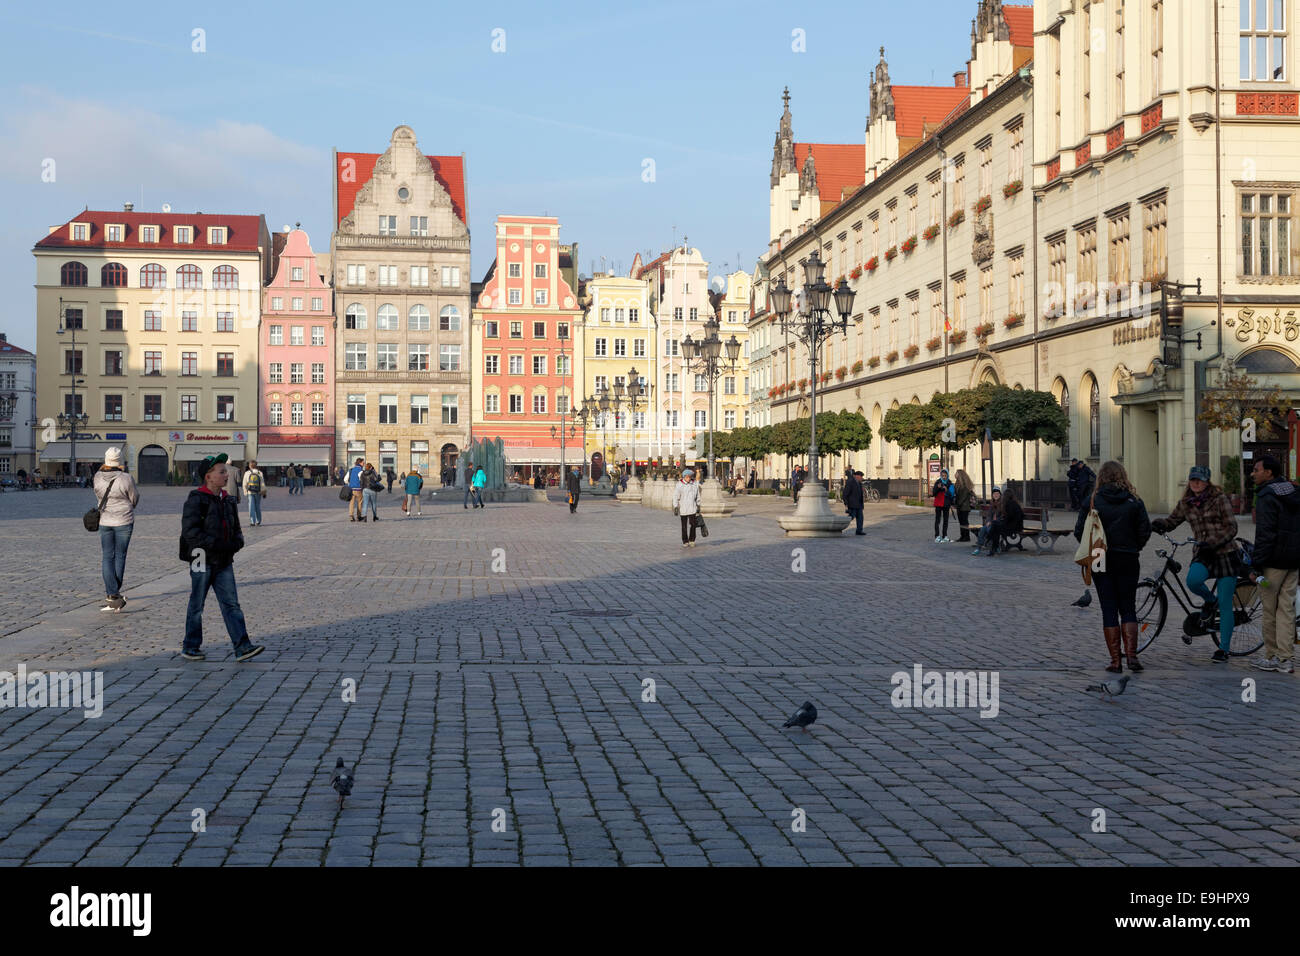 Market Square with New City Hall - Rynek we Wrocławiu, Wroclaw, Poland Stock Photo